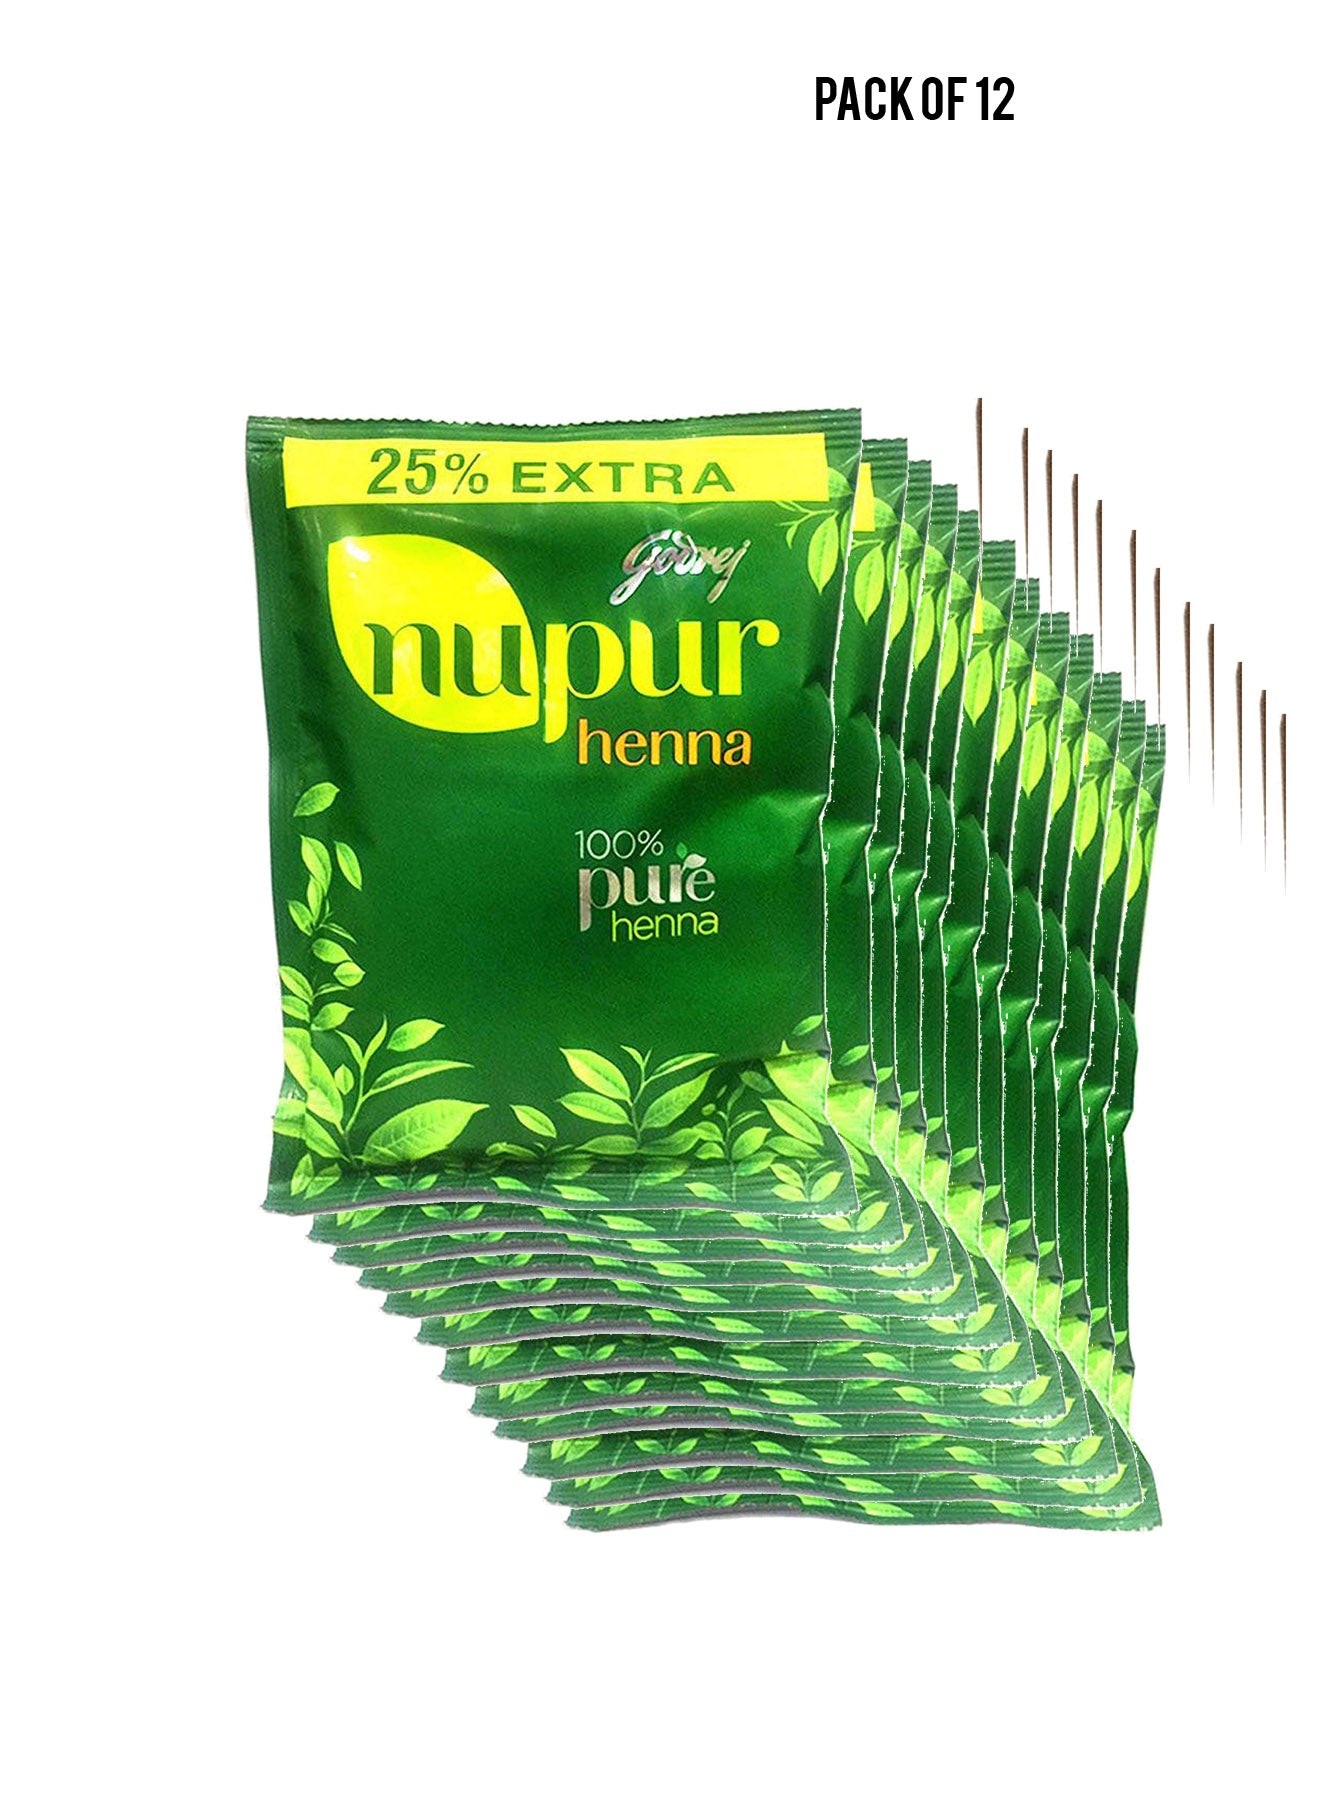 Godrej Nupur Henna 100 Pure Henna 25 Extra 150g Value Pack of 12 